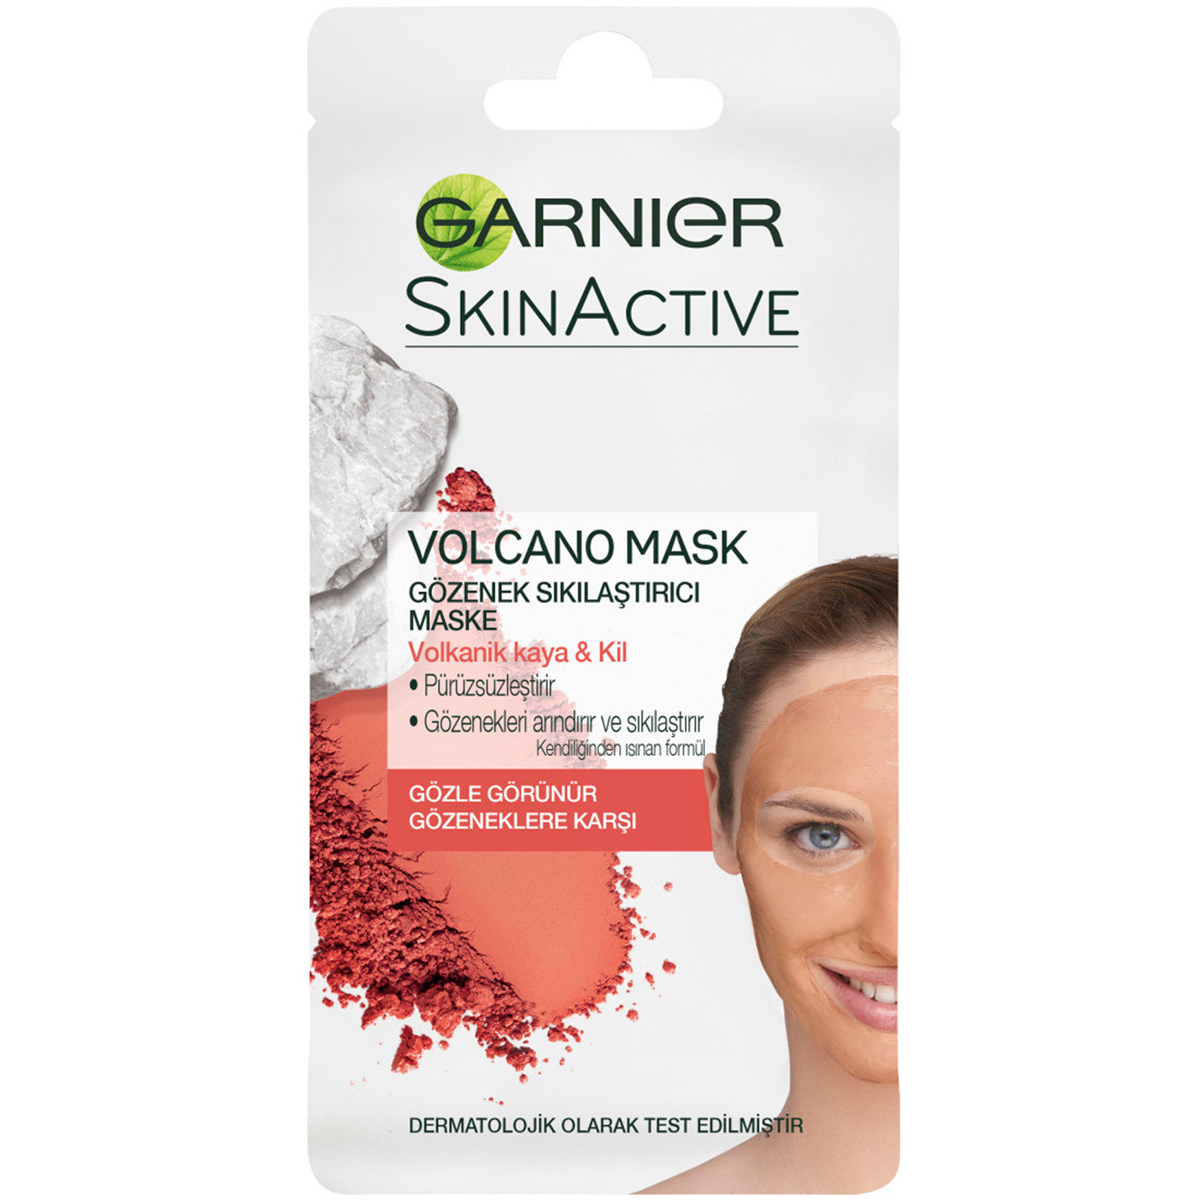 Garnier Skinactive Volcano Mask Gözenek Sıkılaştırıcı Maske